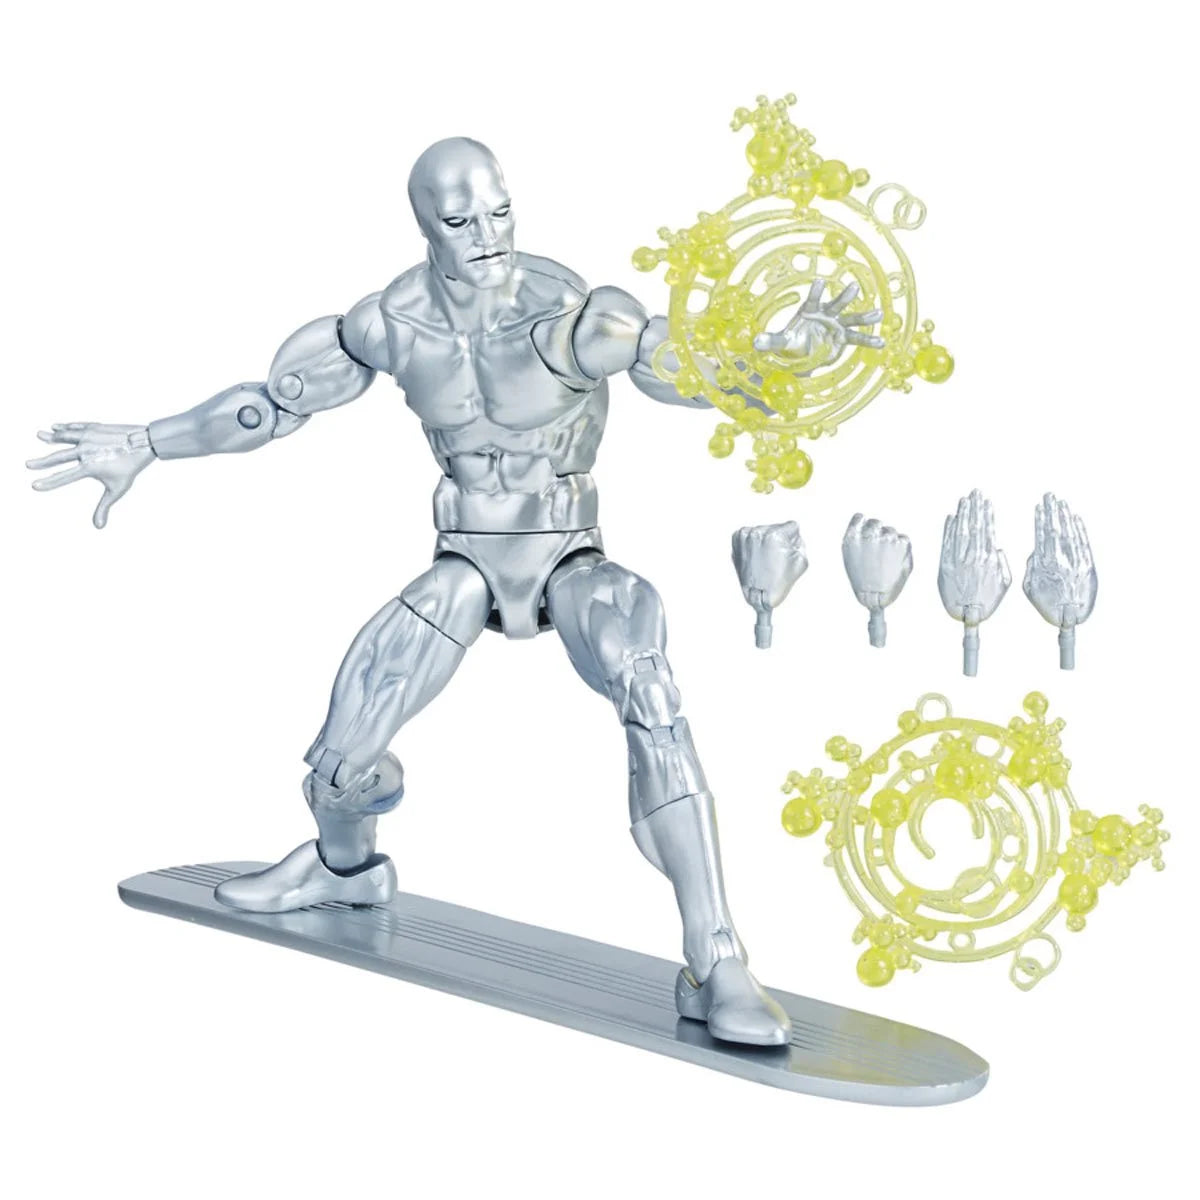 (PREVENTA) Marvel Legends Series Silver Surfer 6-inch Action Figure